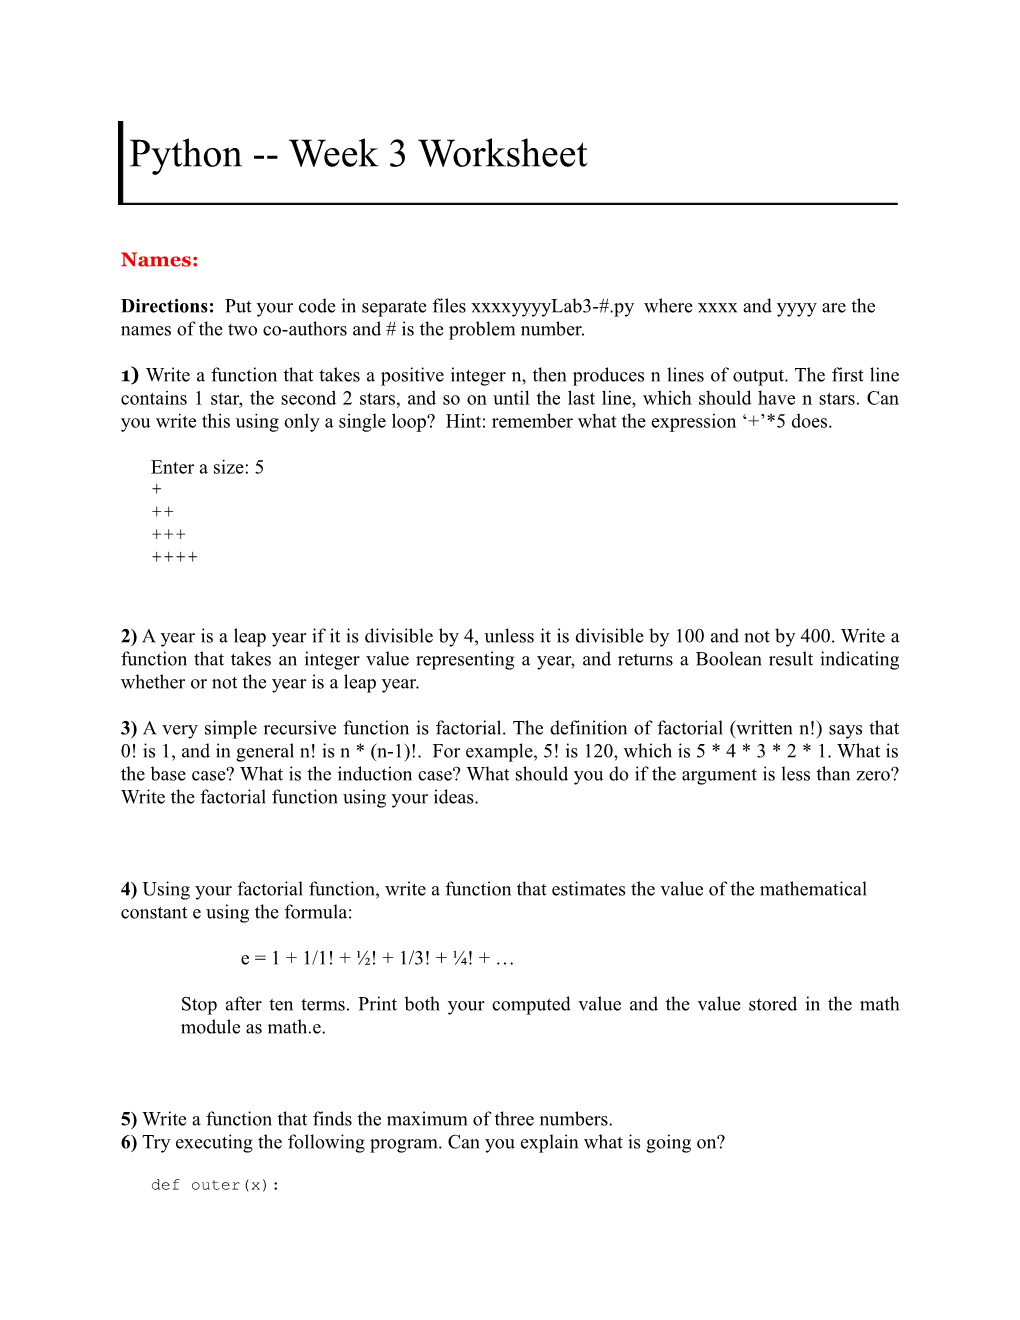 Python Week 3 Worksheet